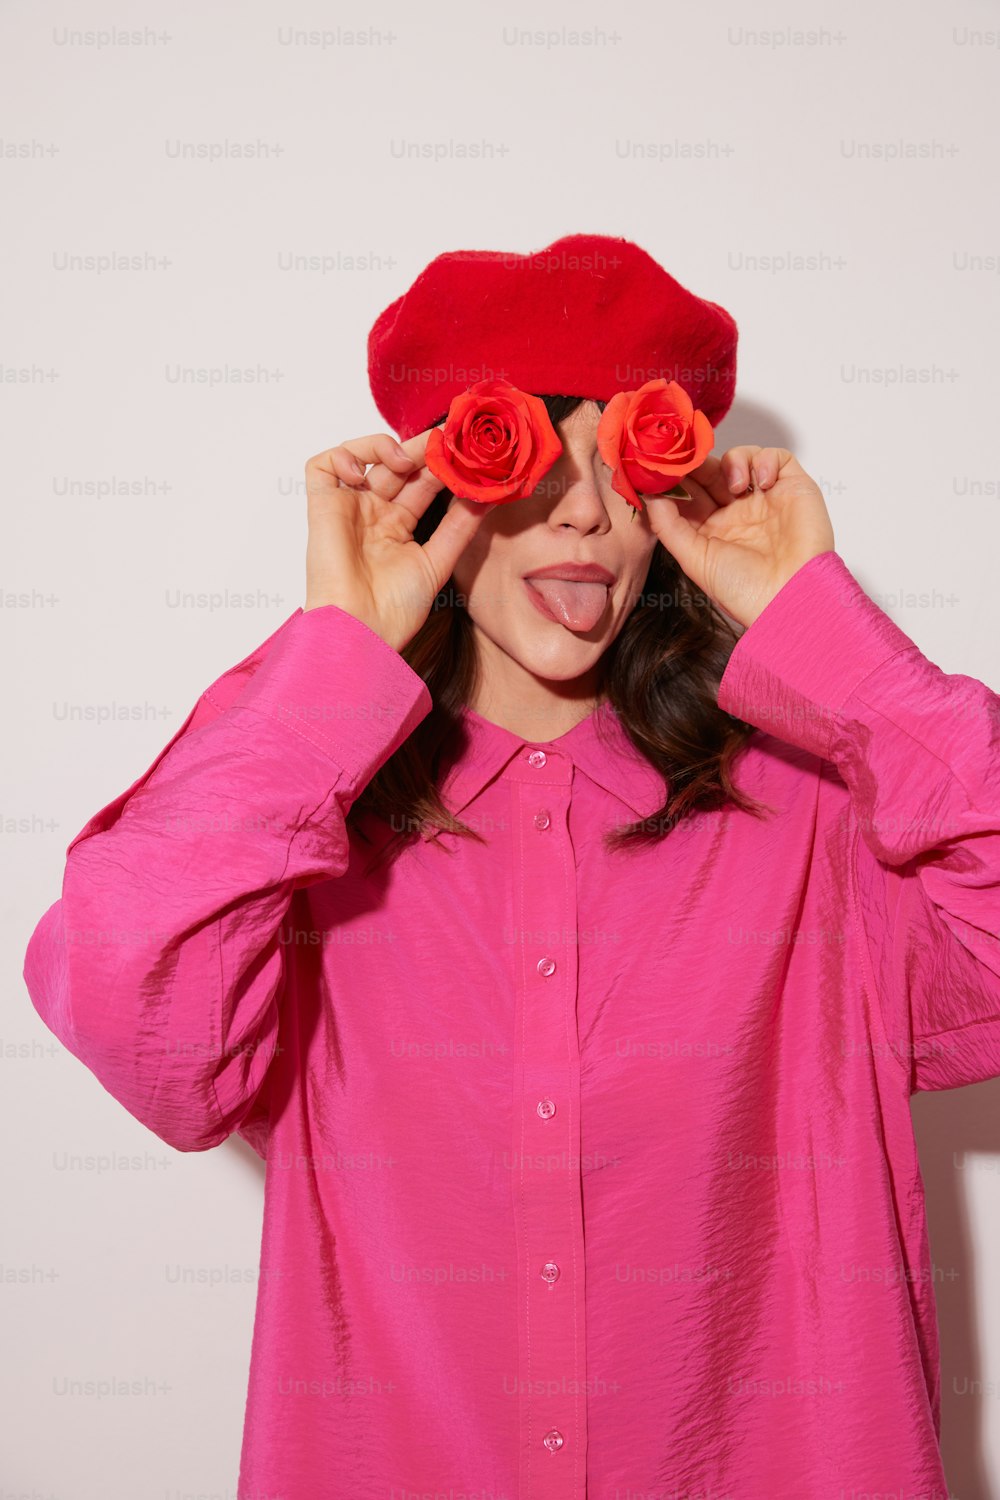 Une femme portant une chemise rose et un chapeau rose rouge